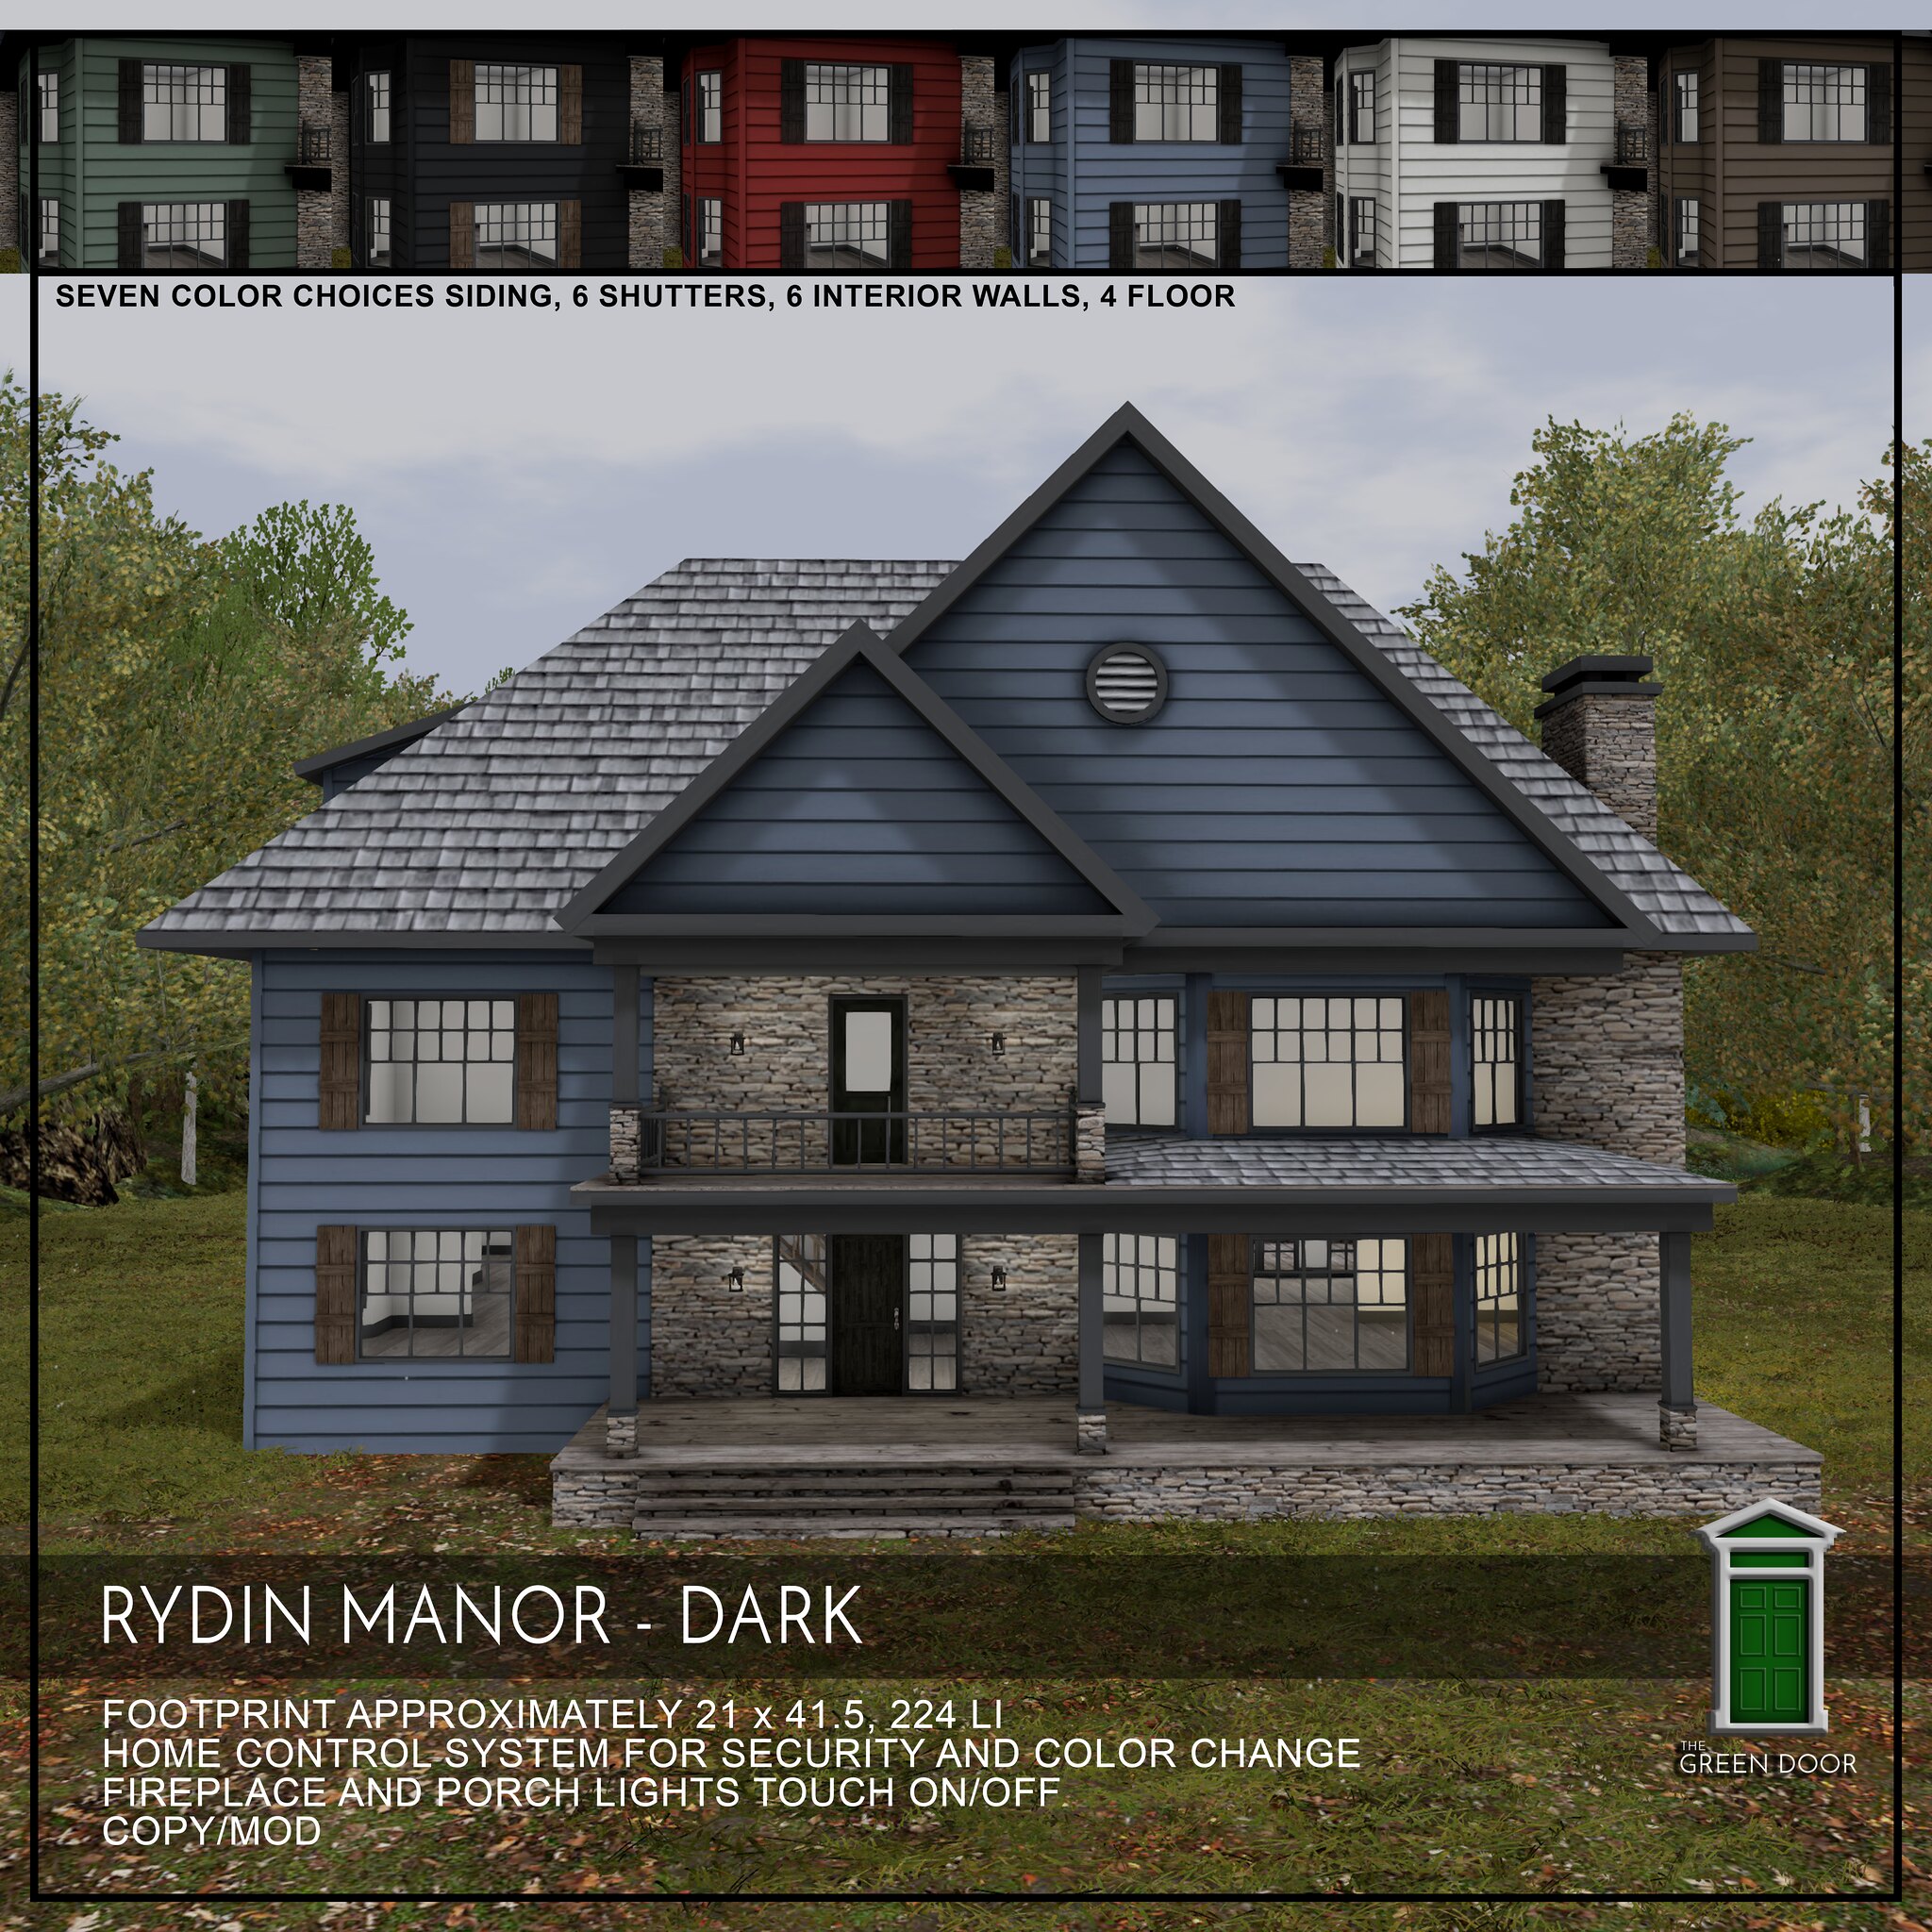 The Green Door – Rydin Manor